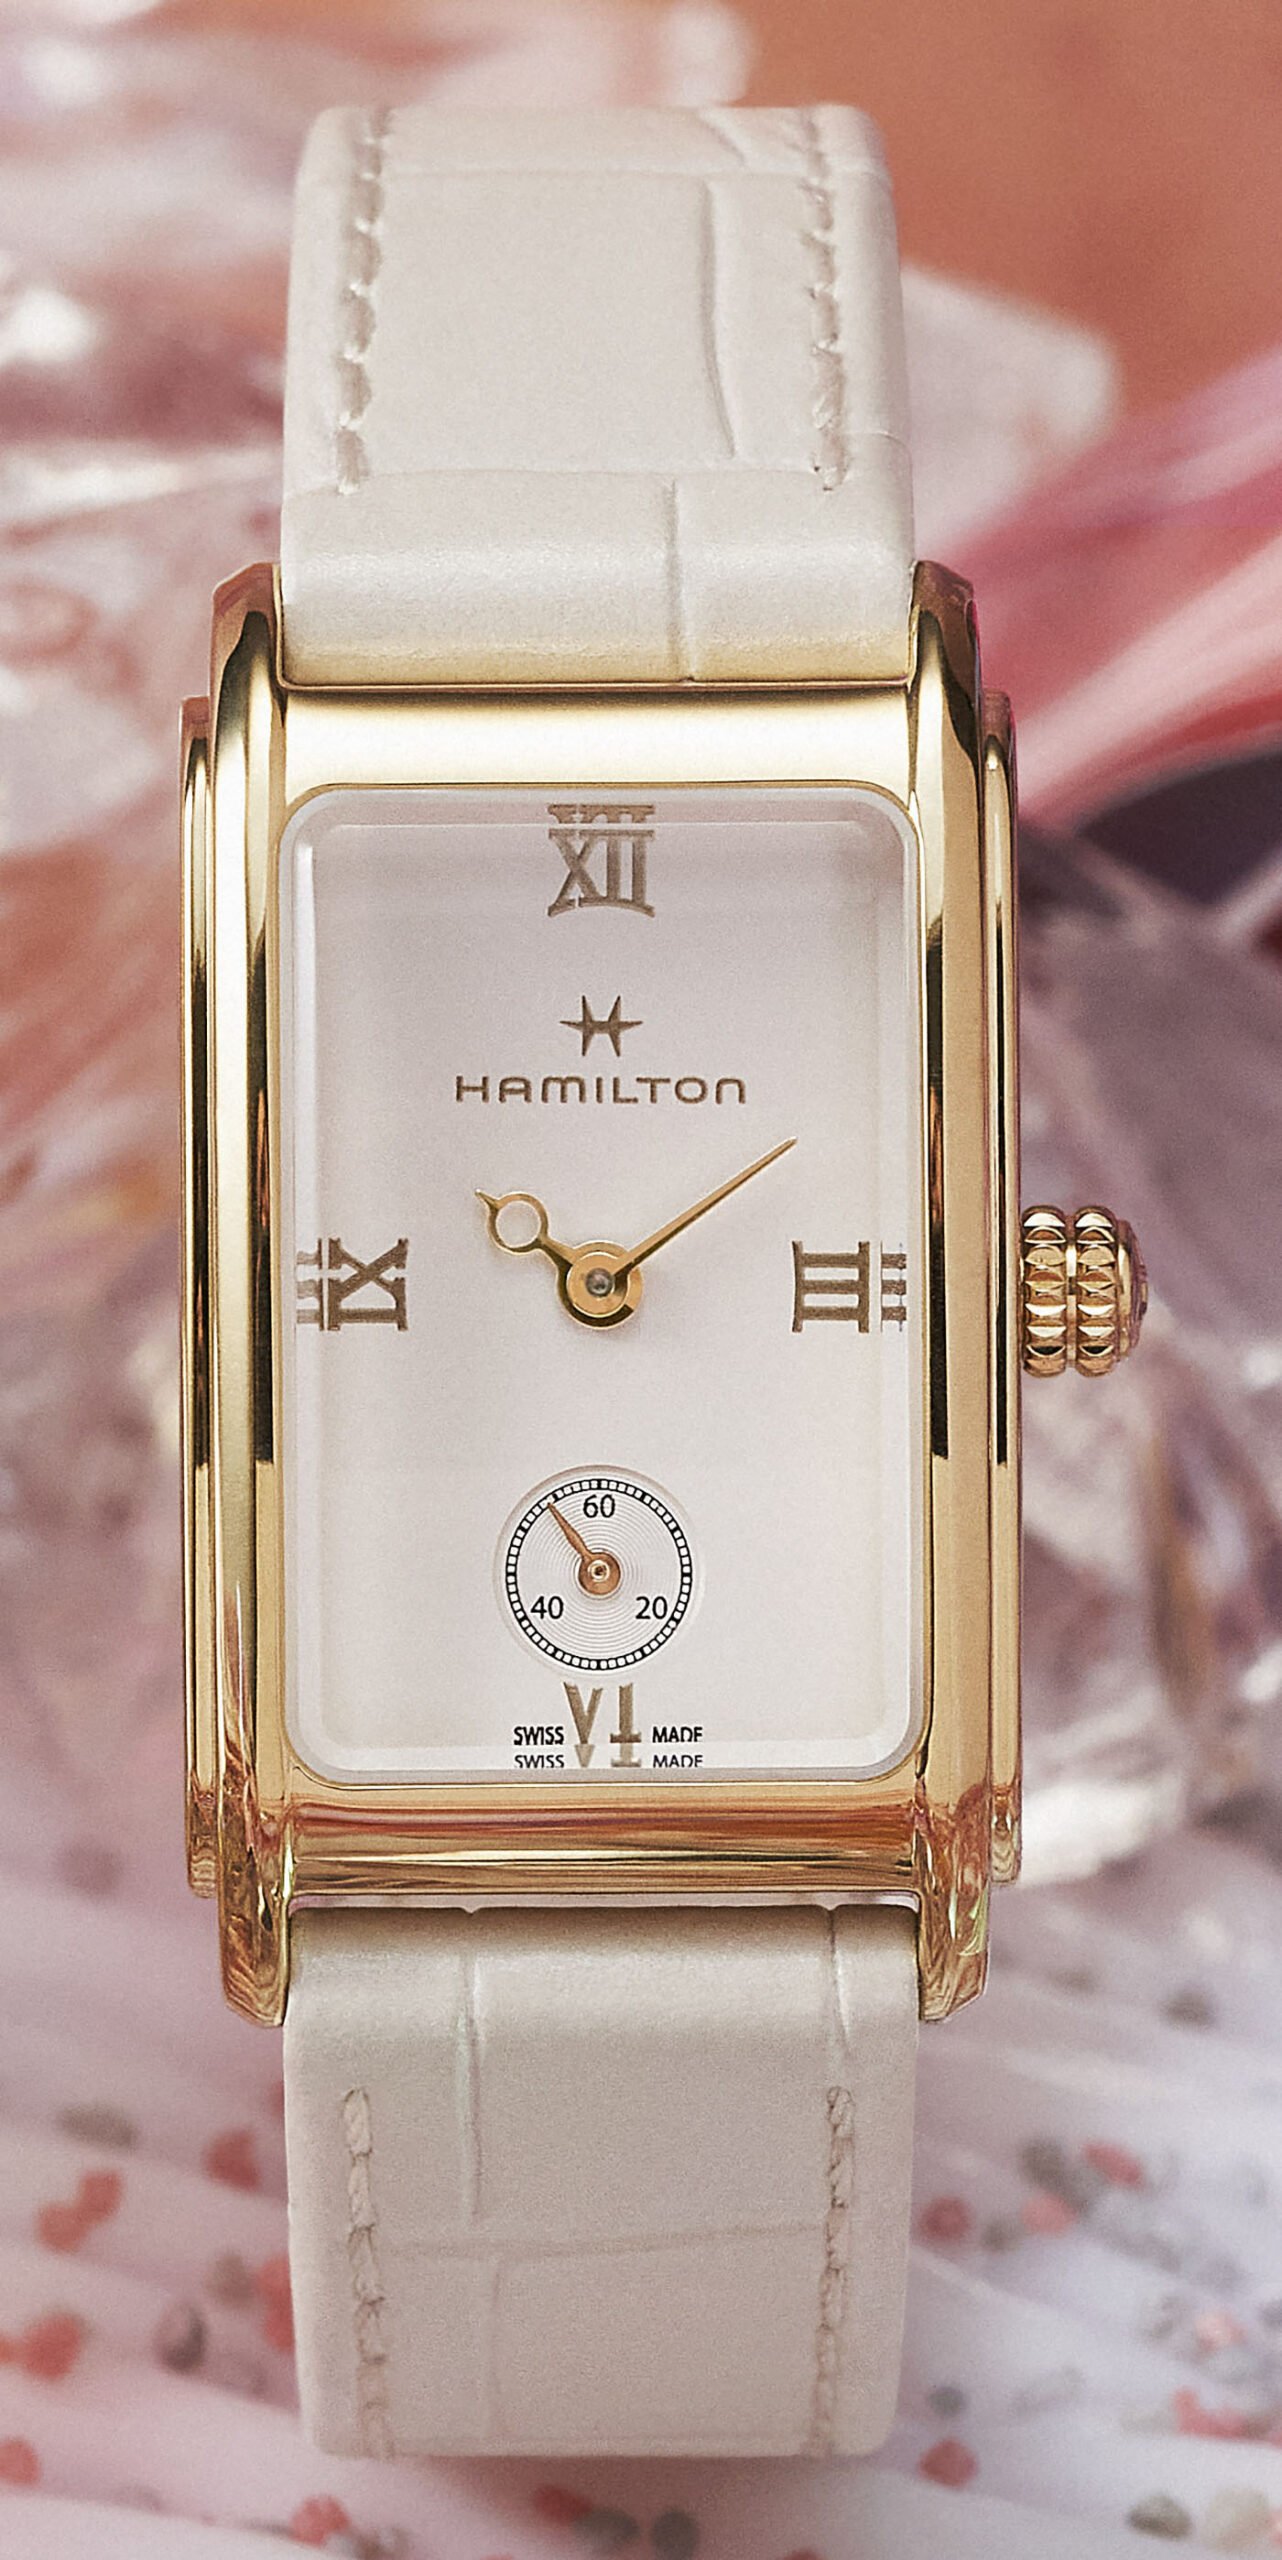 Hamilton представляет часы из капсульной коллекции Janie Bryant